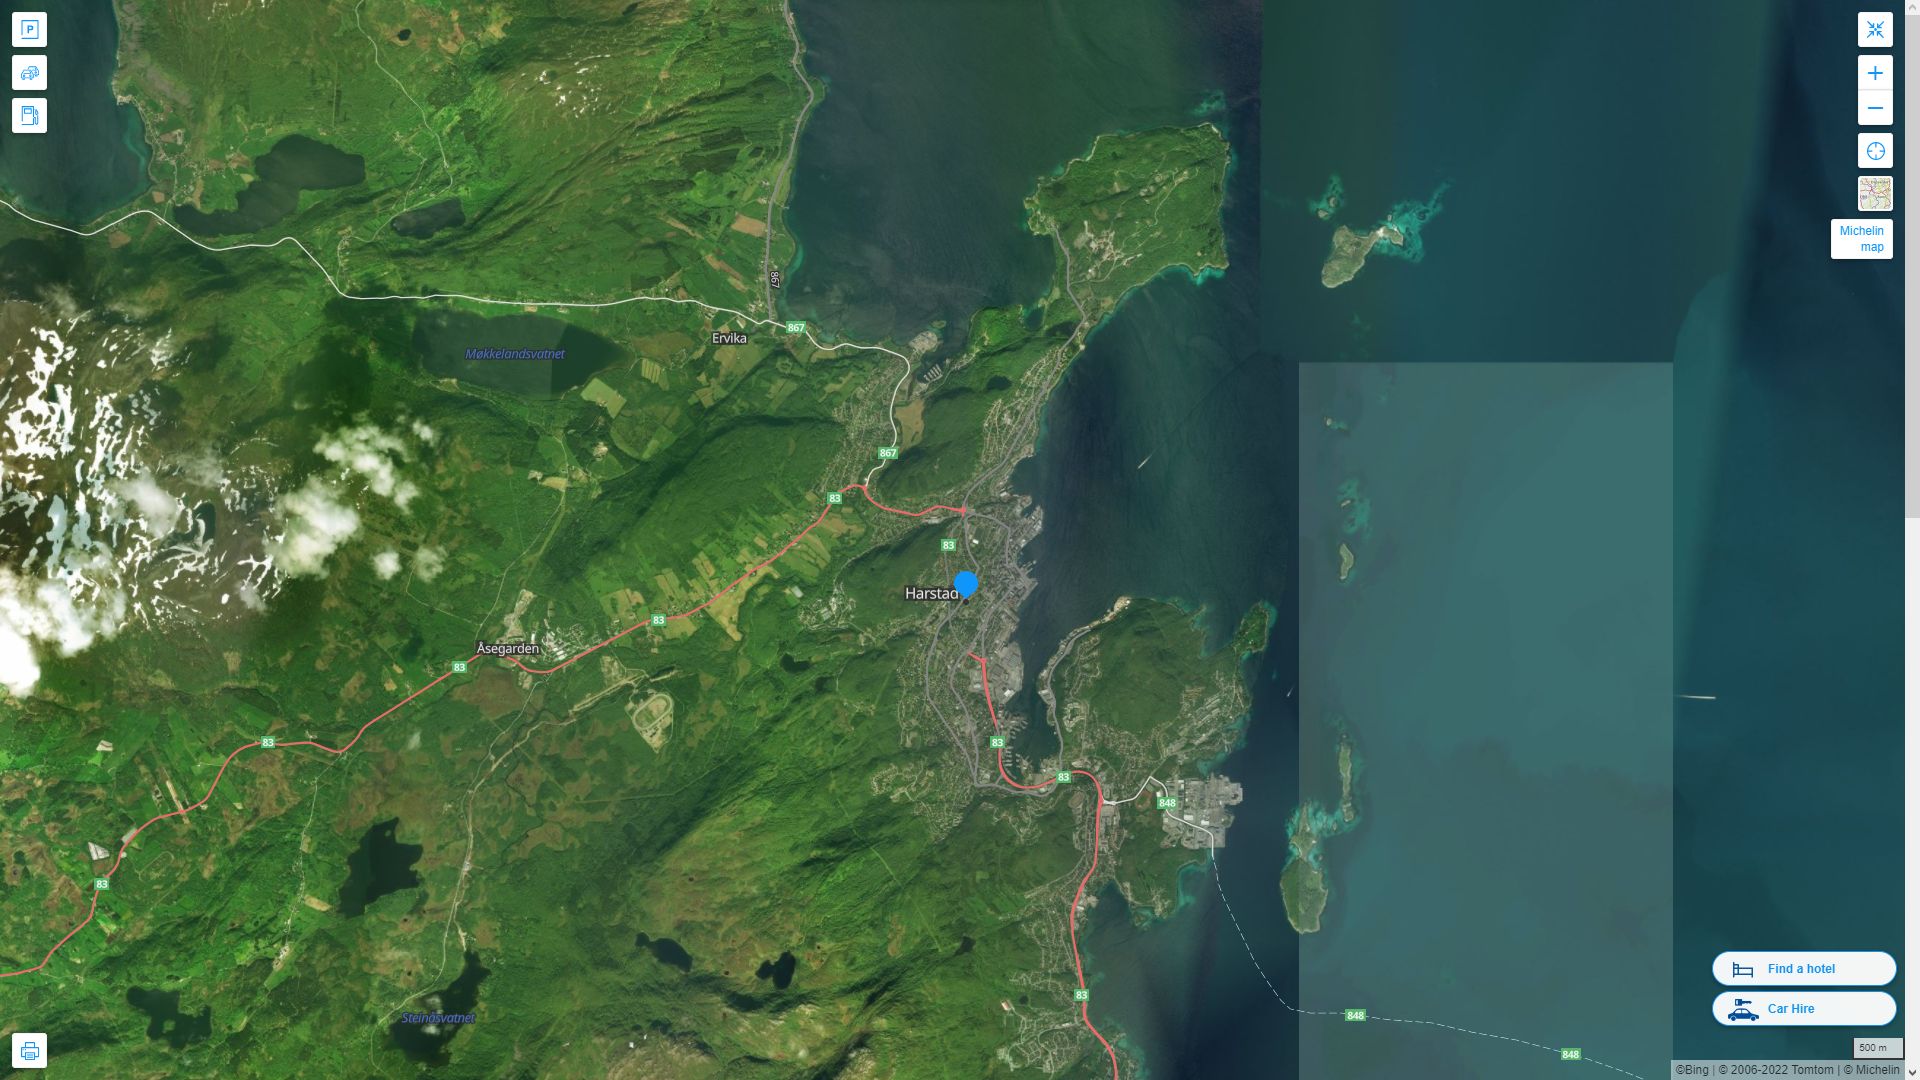 Harstad Norvege Autoroute et carte routiere avec vue satellite